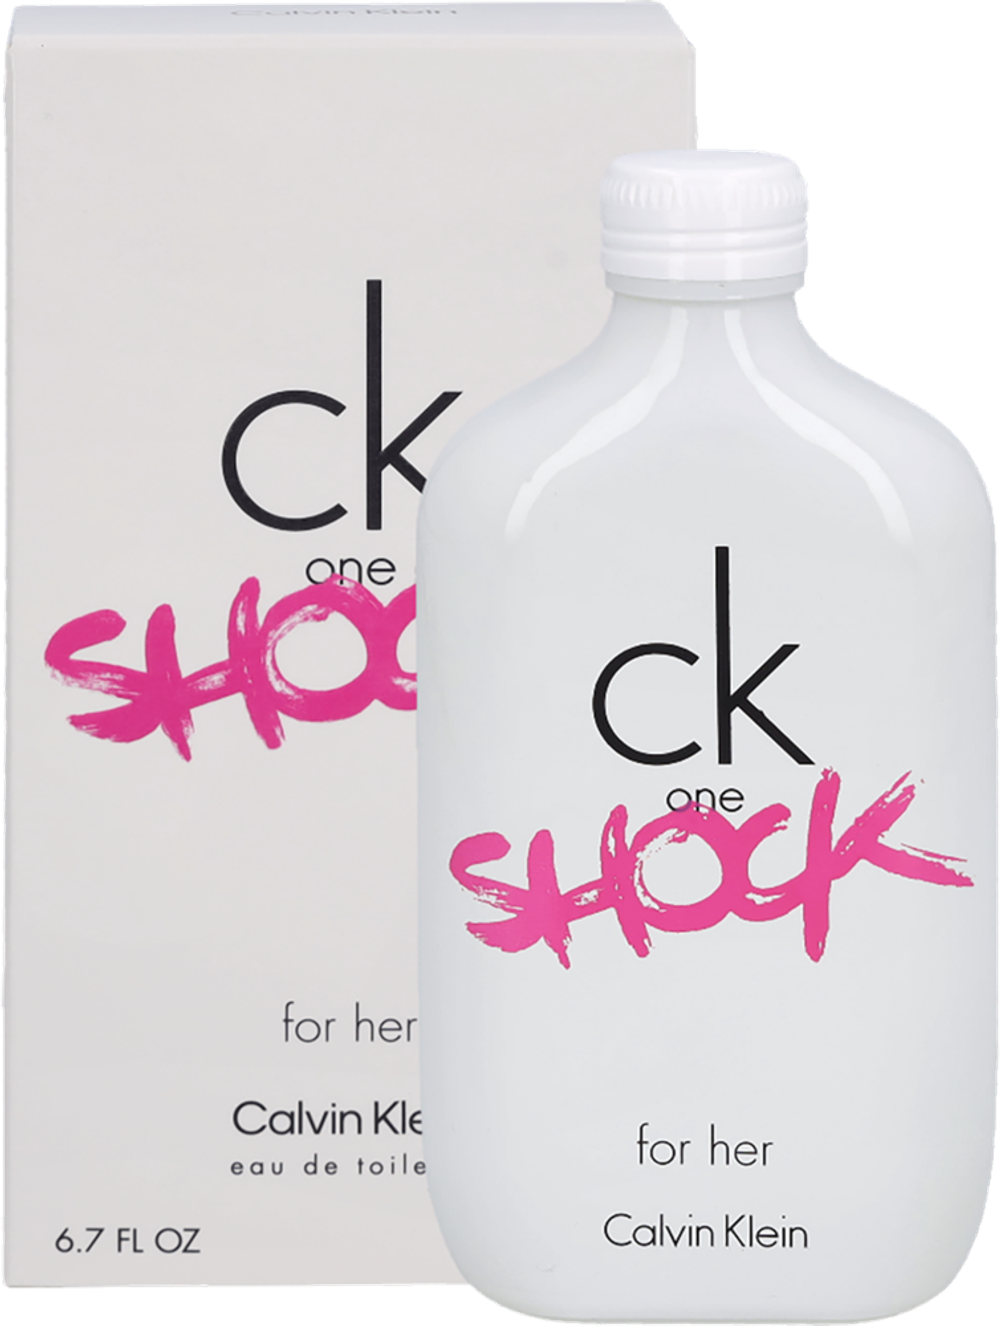 Tilbud på Calvin Klein Ck One Shock For Her Edt Spray fra Fleggaard til 199 kr.